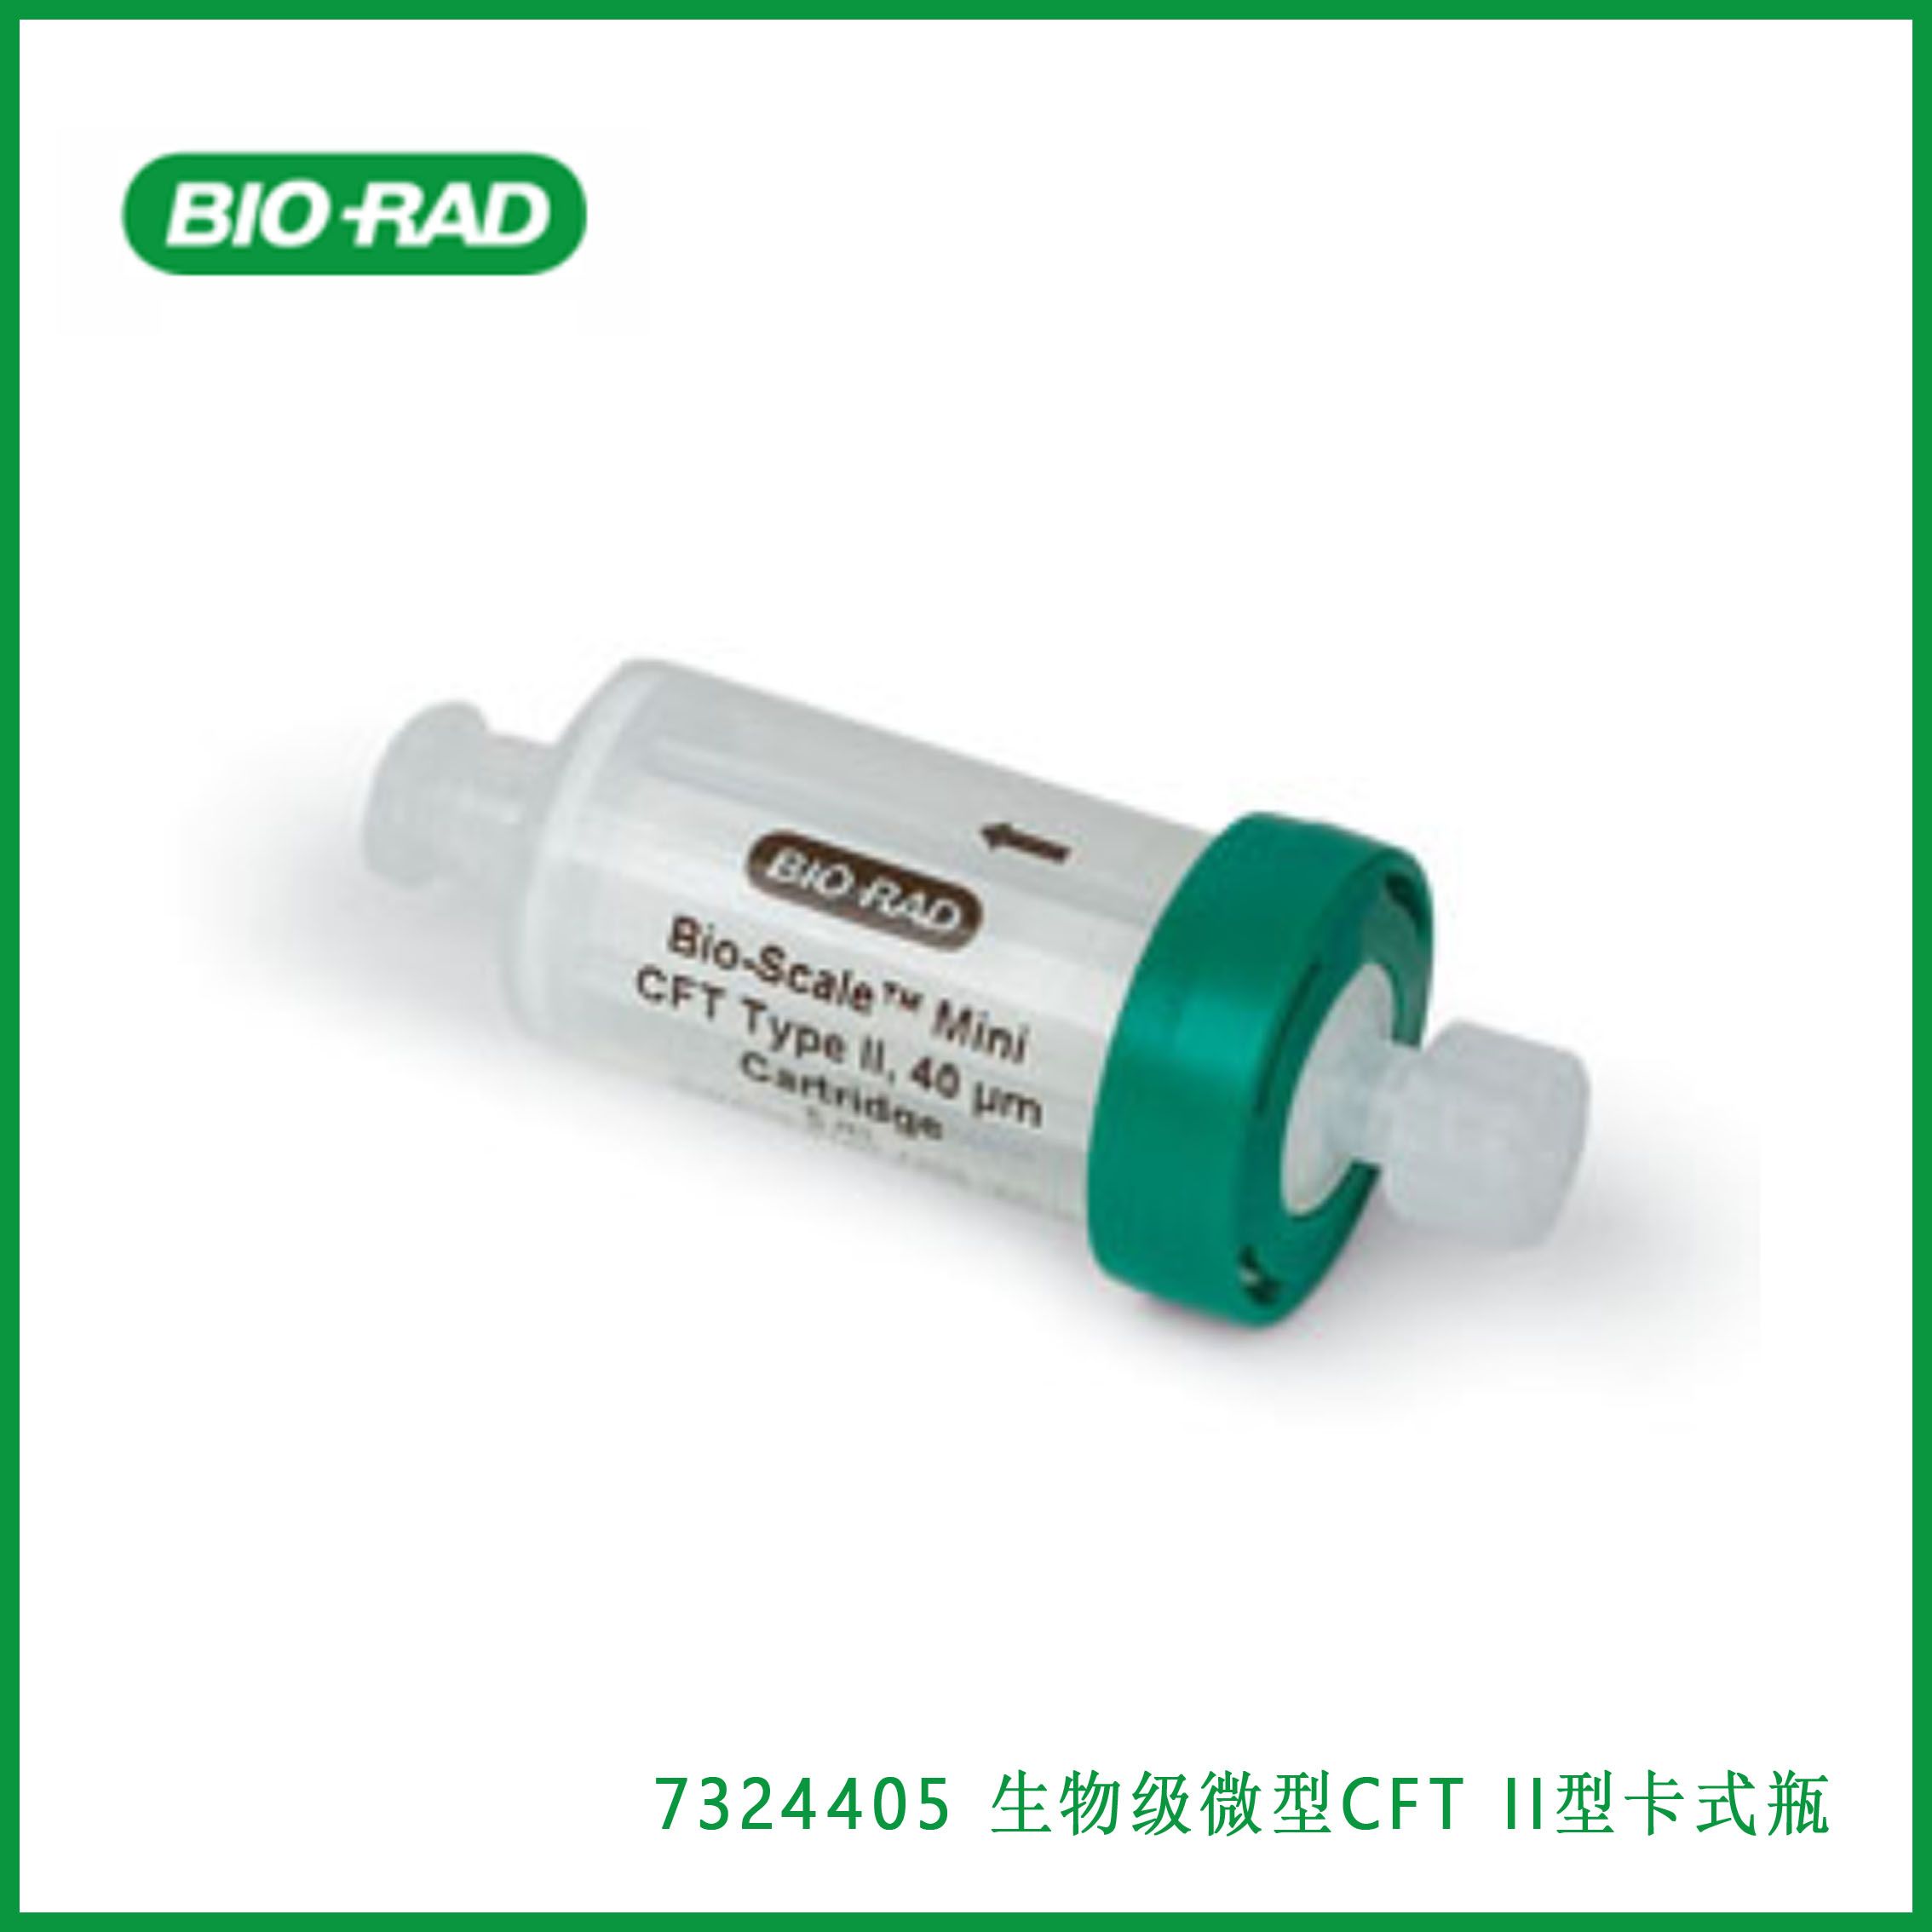 伯乐Bio-Rad 7324405Bio-Scale Mini CFT Type II cartridges, 1 x 5 ml生物级微型CFT II型卡式瓶，现货